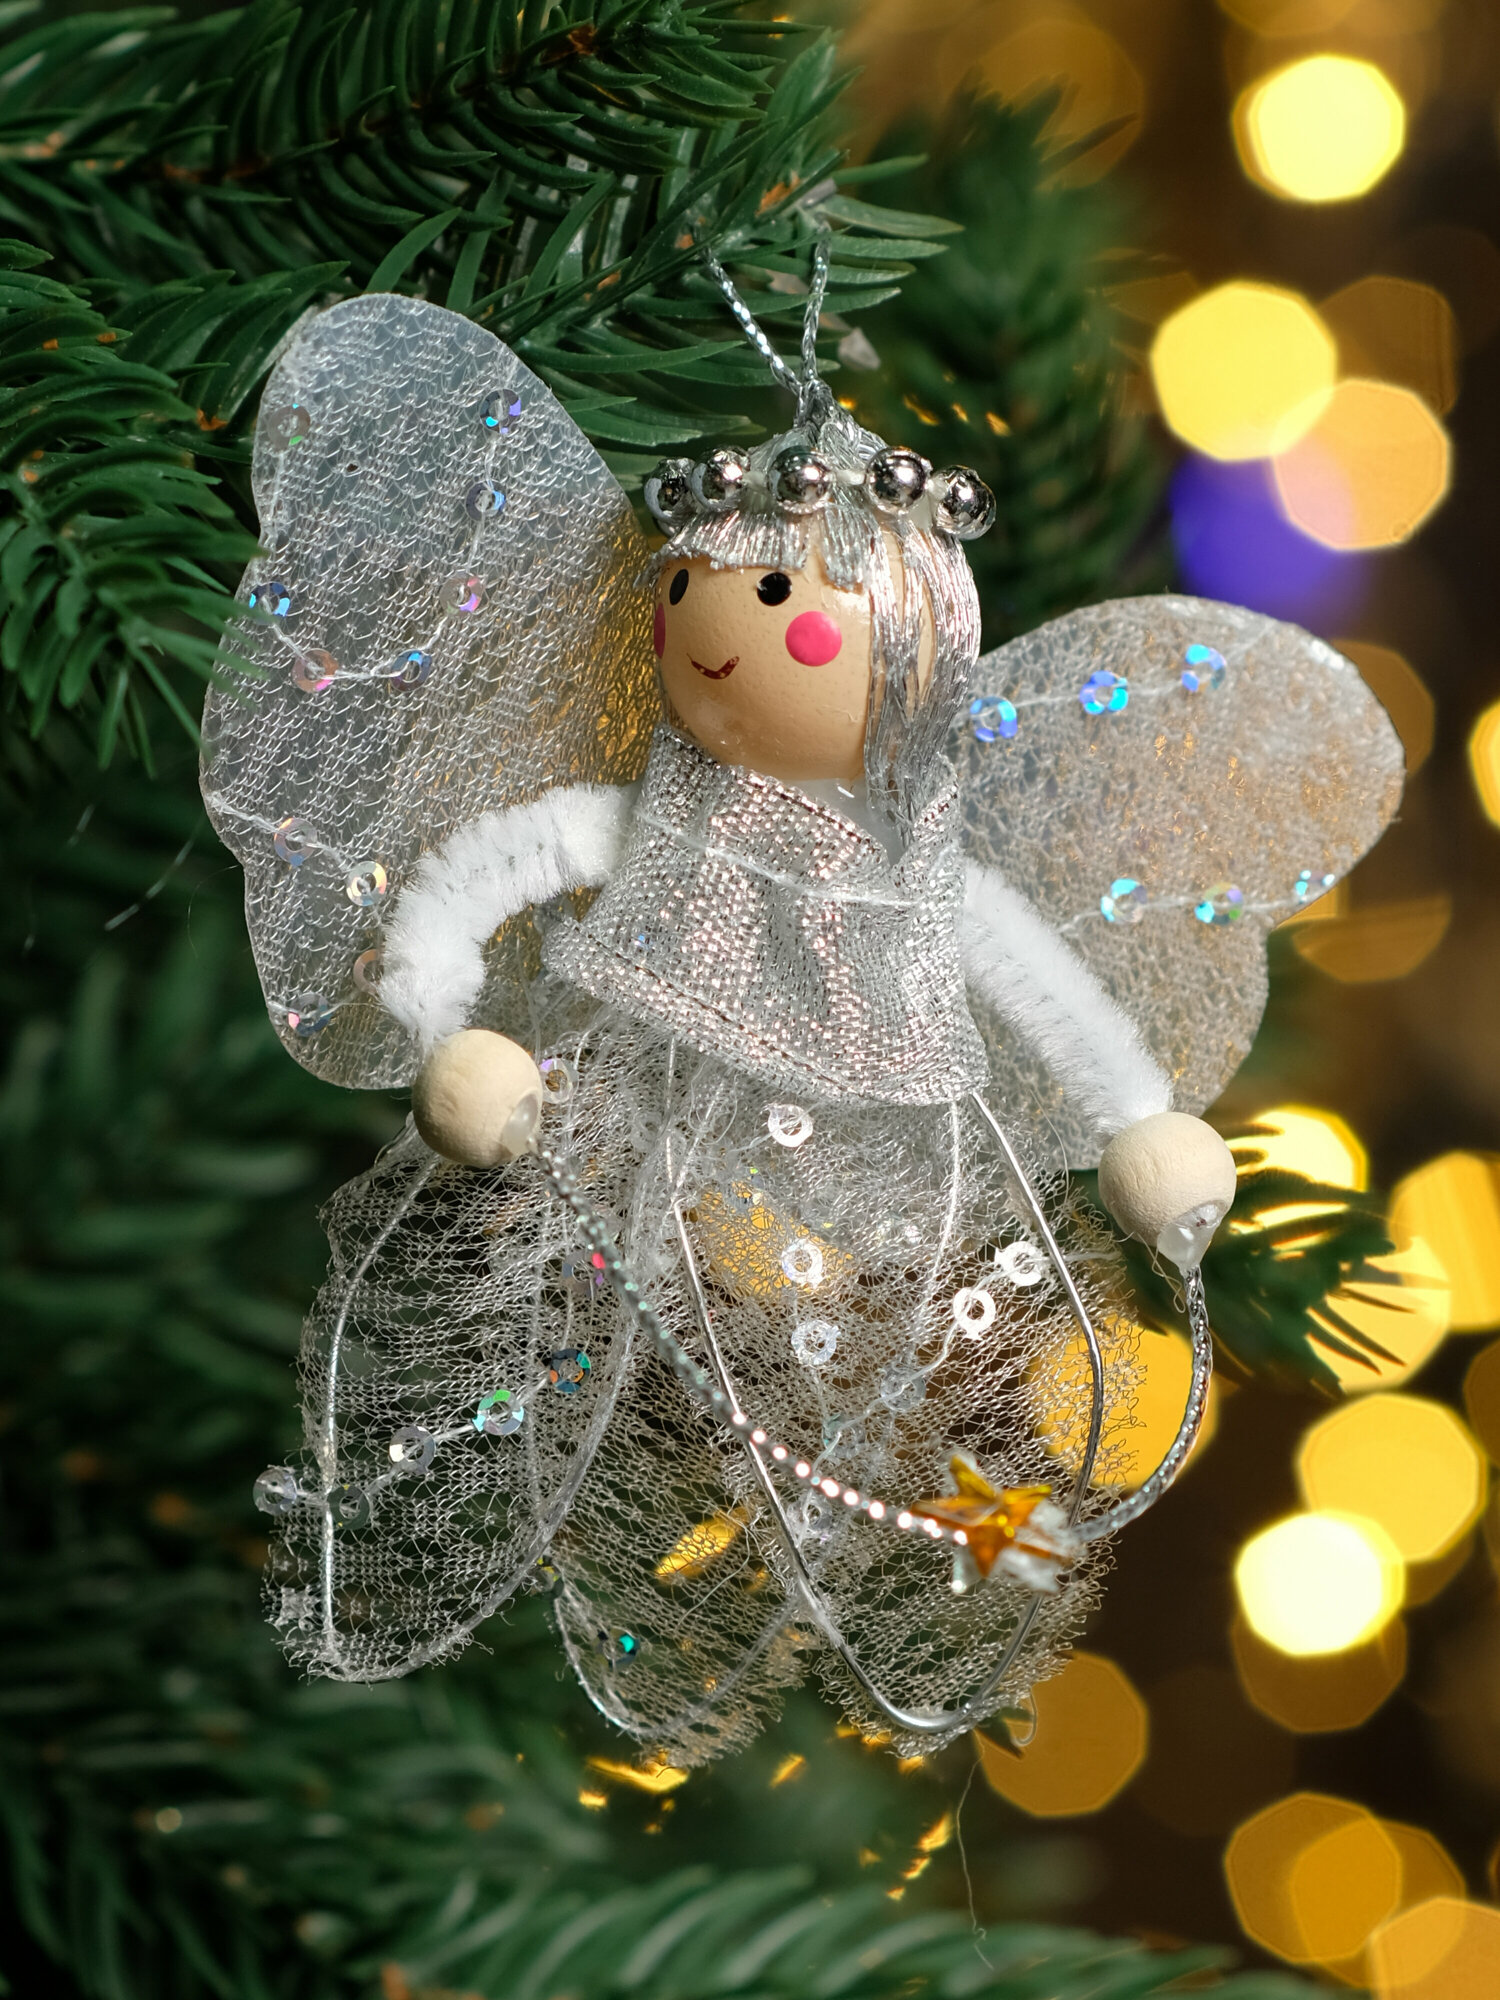 Рождественская декорация Ангел серебристый 8 см, China Dans, артикул HLC-0041, silver